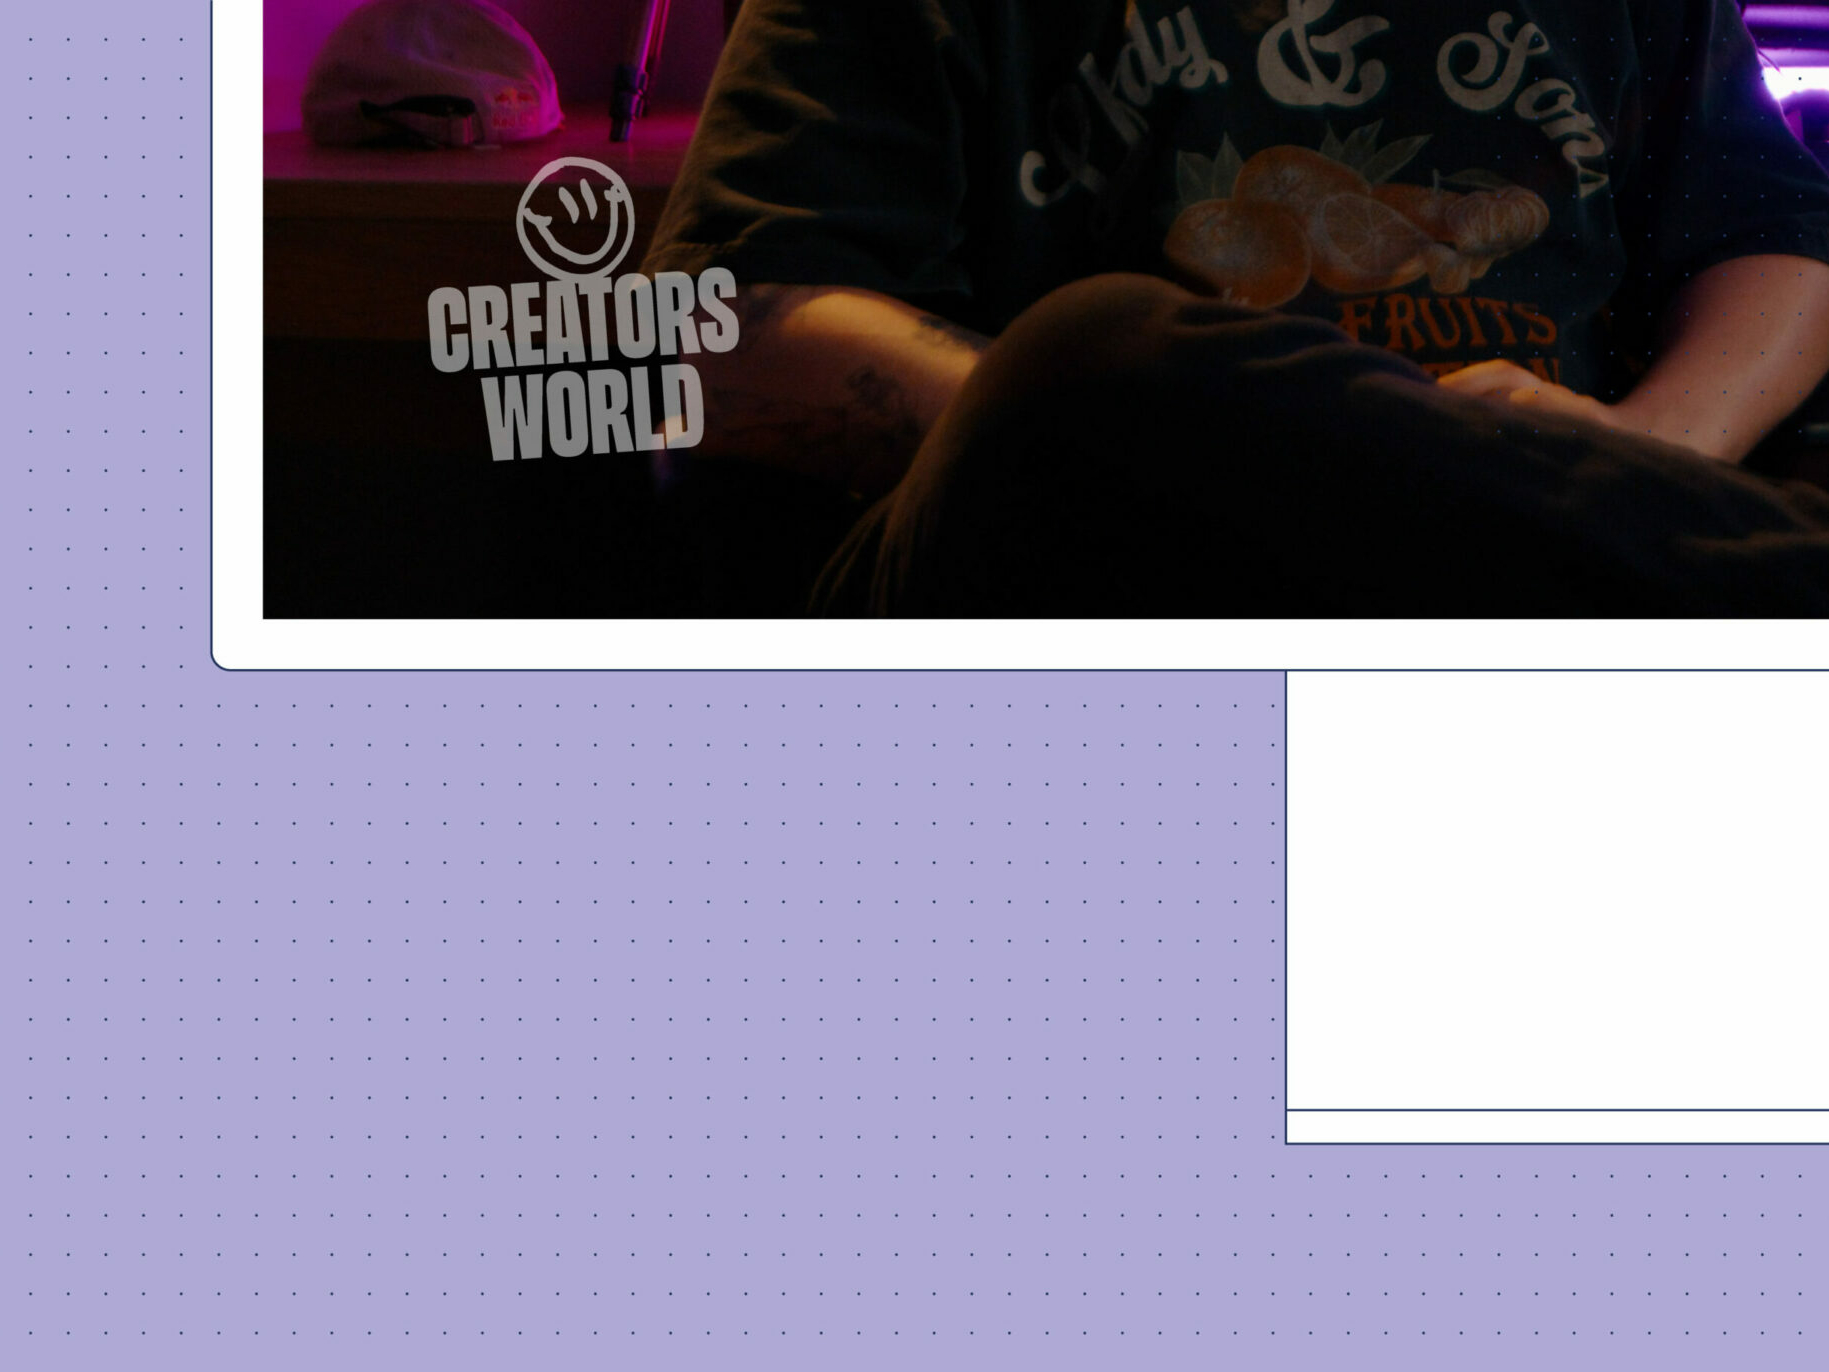 Ausschnitt eines Bildschirms der einen Ausschnitt einer Folge der Creators World Serie zeigt. In der linken unteren Ecke des Bildschirms ist das Logo leicht transparent zu sehen.